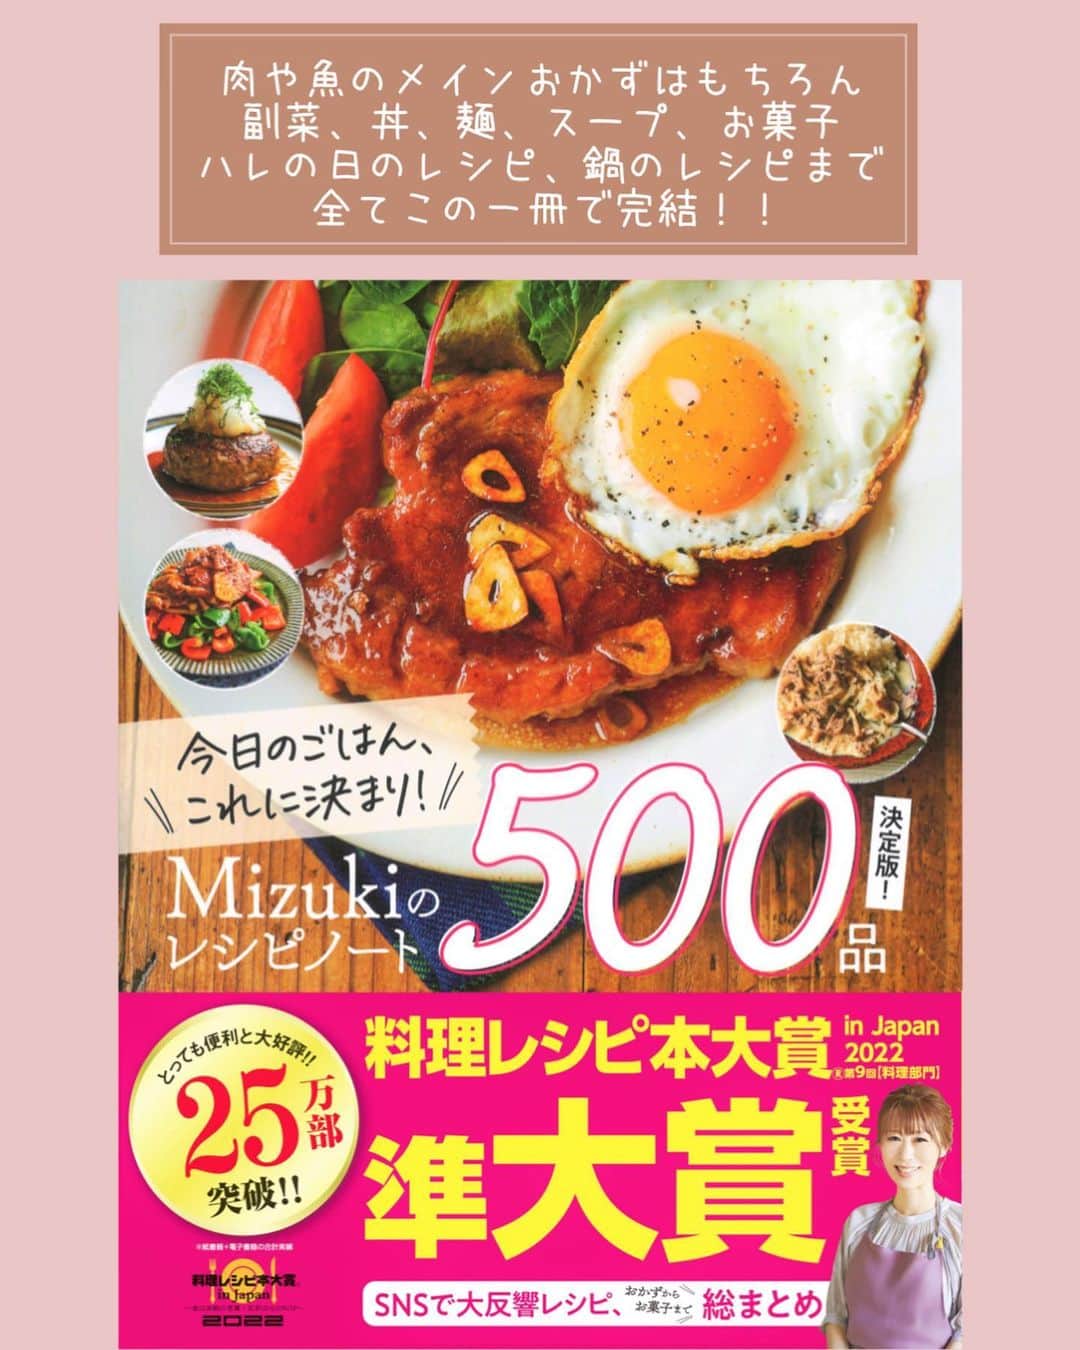 Mizuki【料理ブロガー・簡単レシピ】さんのインスタグラム写真 - (Mizuki【料理ブロガー・簡単レシピ】Instagram)「・#ウワサのお客さま レシピ📺 ⁡ ［#レシピ ］ ーーーーーーーーーーーーーー 速攻ほったらかしチャプチェ ーーーーーーーーーーーーーー ⁡ ⁡ ⁡ おはようございます☺️ ⁡ 今日のレシピは #ウワサのお客さま でもご紹介した \ 速攻ほったらかしチャプチェ / ⁡ 春雨は戻さない💕 味付けは下味のみで失敗なし✨ 材料を重ねたら ''フライパンにおまかせ''の 超簡単手間抜きレシピです🤭 ⁡ 冷凍ほうれん草を使えば アク抜き要らずで時短できますよ〜👌 (今野菜高いから冷凍野菜助かる🙏) レシピ下の《ポイント》に アレンジ方法も記載いたしましたので よかったらお試しくださいね🥰 ⁡ ⁡ ⁡ ⋱⋰ ⋱⋰ ⋱⋰ ⋱⋰ ⋱⋰ ⋱⋰ ⋱⋰ 📍簡単・時短・節約レシピ更新中  Threadsもこちらから▼ @mizuki_31cafe ⁡ 📍謎の暮らし＆変なライブ垢 @mizuki_kurashi ⋱⋰ ⋱⋰ ⋱⋰ ⋱⋰ ⋱⋰ ⋱⋰ ⋱⋰ ⁡ ⁡ ⁡ ＿＿＿＿＿＿＿＿＿＿＿＿＿＿＿＿＿＿＿ 【2人分】 豚こま切れ肉…150g 冷凍ほうれんそう…100g 玉ねぎ…1/2個 乾燥緑豆春雨(ショートタイプ)…50g ●オイスターソース・醤油・みりん・ごま油…各大1 水…150ml ごま…適量   1.玉ねぎは薄切りにする。豚肉に●をからめる。 2.フライパンに春雨(乾燥のまま)→玉ねぎ→ほうれんそう(冷凍のまま)→豚肉の順に広げて重ね、 水を注ぐ。蓋をして中火にかけ、7分蒸し焼きにする。 3.蓋を外して炒め合わせ、器に盛り、ごまを振る。 ￣￣￣￣￣￣￣￣￣￣￣￣￣￣￣￣￣￣￣ ⁡ ⁡ 《ポイント》 ♦︎乾燥春雨を一番下にすることで、調味料や野菜から出た水分を春雨が吸って戻る効率的なレシピです♩ ♦︎生のほうれん草を使用する場合はさっと下茹でするか、根元を水に晒すなどしてアク抜きすると◎ ♦︎ほうれん草の代わりに小松菜を使用しても♩(小松菜の場合は生のまま4cm長さに切るだけ) ⁡ ⁡ ⁡ ⁡ ⁡ ⁡ ⋱⋰ ⋱⋰ ⋱⋰ ⋱⋰ ⋱⋰ ⋱⋰ ⋱⋰  愛用している調理器具・器など   #楽天ROOMに載せてます ‎𐩢𐩺  (ハイライトから飛べます🕊️) ⋱⋰ ⋱⋰ ⋱⋰ ⋱⋰ ⋱⋰ ⋱⋰ ⋱⋰ ⁡ ⁡ ⁡ ⁡ ⁡ ✼••┈┈┈┈┈••✼••┈┈┈┈┈••✼ 今日のごはんこれに決まり！ ‎𓊆#Mizukiのレシピノート 500品𓊇 ✼••┈┈┈┈┈••✼••┈┈┈┈┈••✼ ⁡ ˗ˏˋ おかげさまで25万部突破 ˎˊ˗ 料理レシピ本大賞準大賞を受賞しました✨ ⁡ 6000点の中からレシピを厳選し まさかの【500レシピ掲載】 肉や魚のメインおかずはもちろん 副菜、丼、麺、スープ、お菓子 ハレの日のレシピ、鍋のレシピまで 全てこの一冊で完結 𓌉◯𓇋 (全国の書店・ネット書店で発売中) ⁡ ⁡ ⁡ ⁡ ⁡ #チャプチェ #ほったらかし #ほったらかしレシピ #速攻料理 #ほったらかし料理 #ほったらかしチャプチェ #ほうれん草レシピ #節約料理  #簡単料理  #時短料理 #mizukiレシピ  #時短レシピ #節約レシピ #簡単レシピ」9月24日 7時06分 - mizuki_31cafe